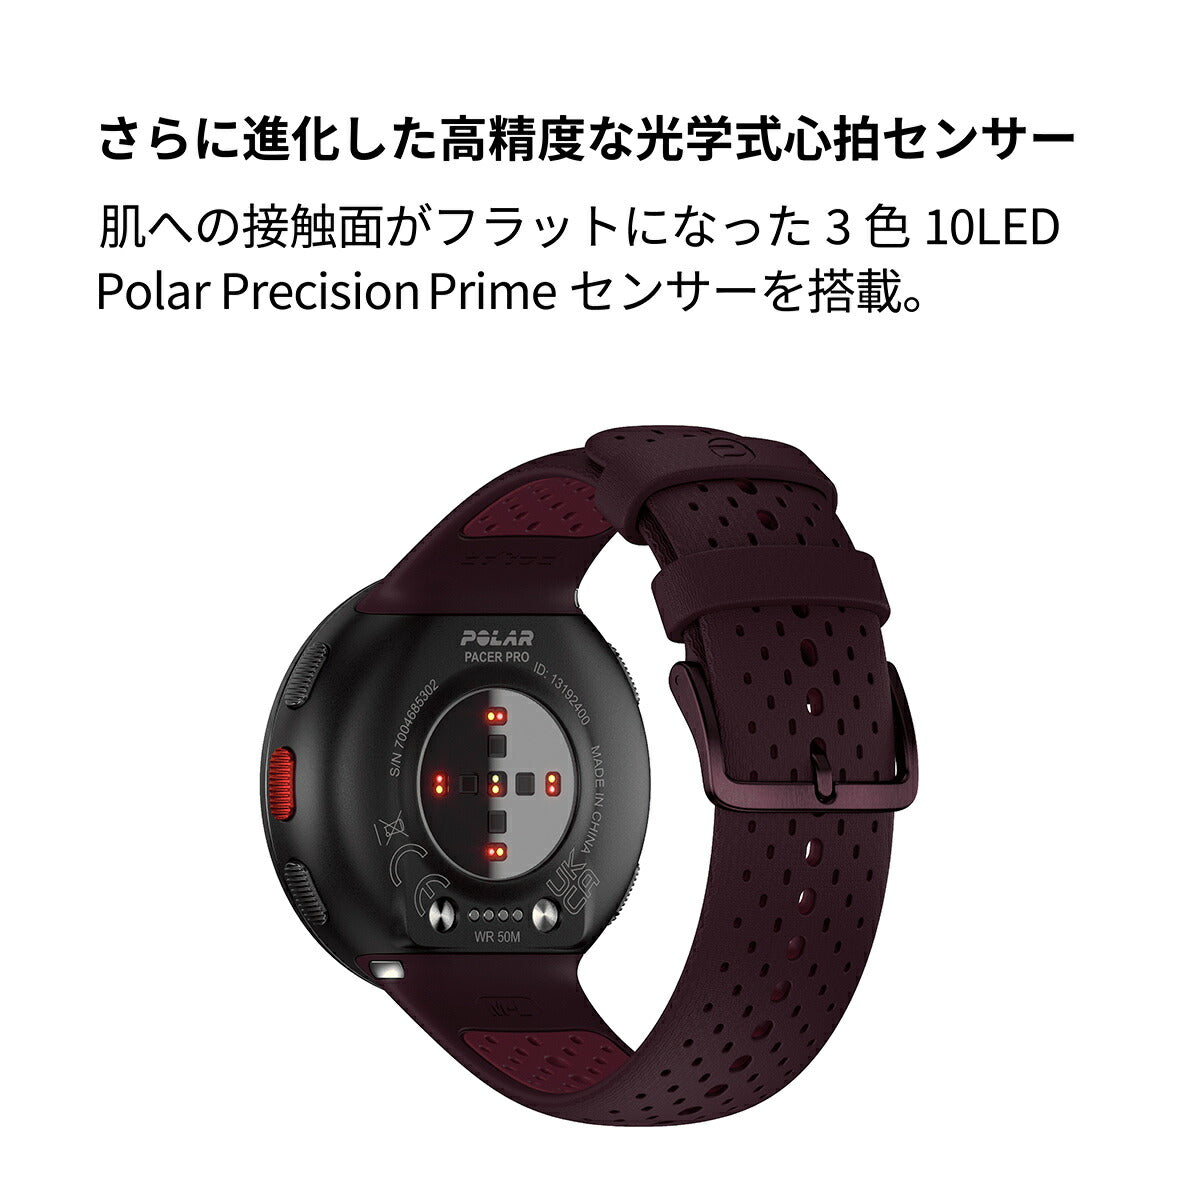 ポラール POLAR PACER PRO スマートウォッチ GPS 心拍 トレーニング ランニング マラソン 腕時計 ぺーサープロ ワインレッド S-L 900102182 日本正規品